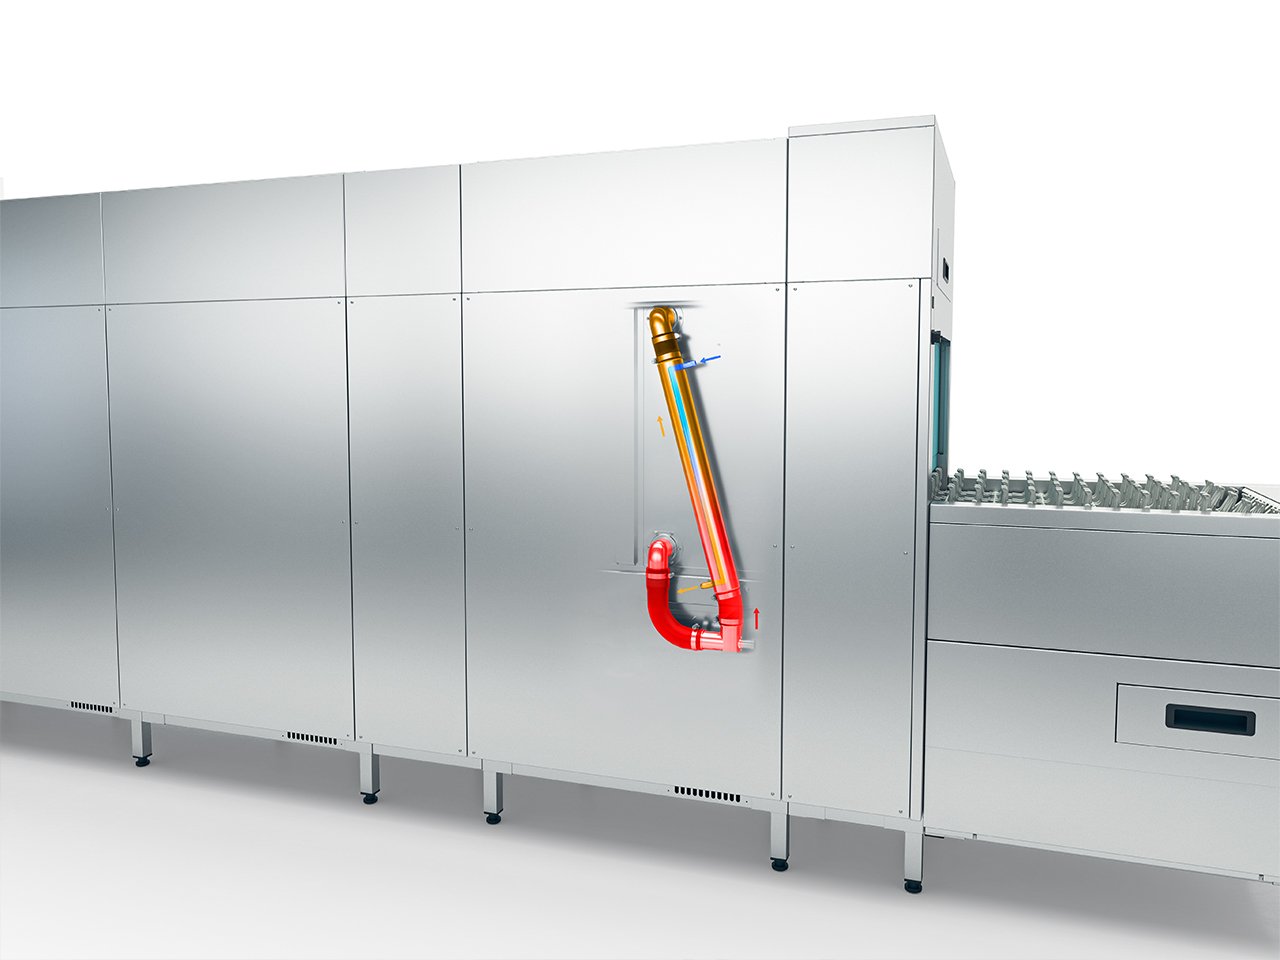 Winterhalter MTF conveyor dishwashers pre-wash zone heat exchanger